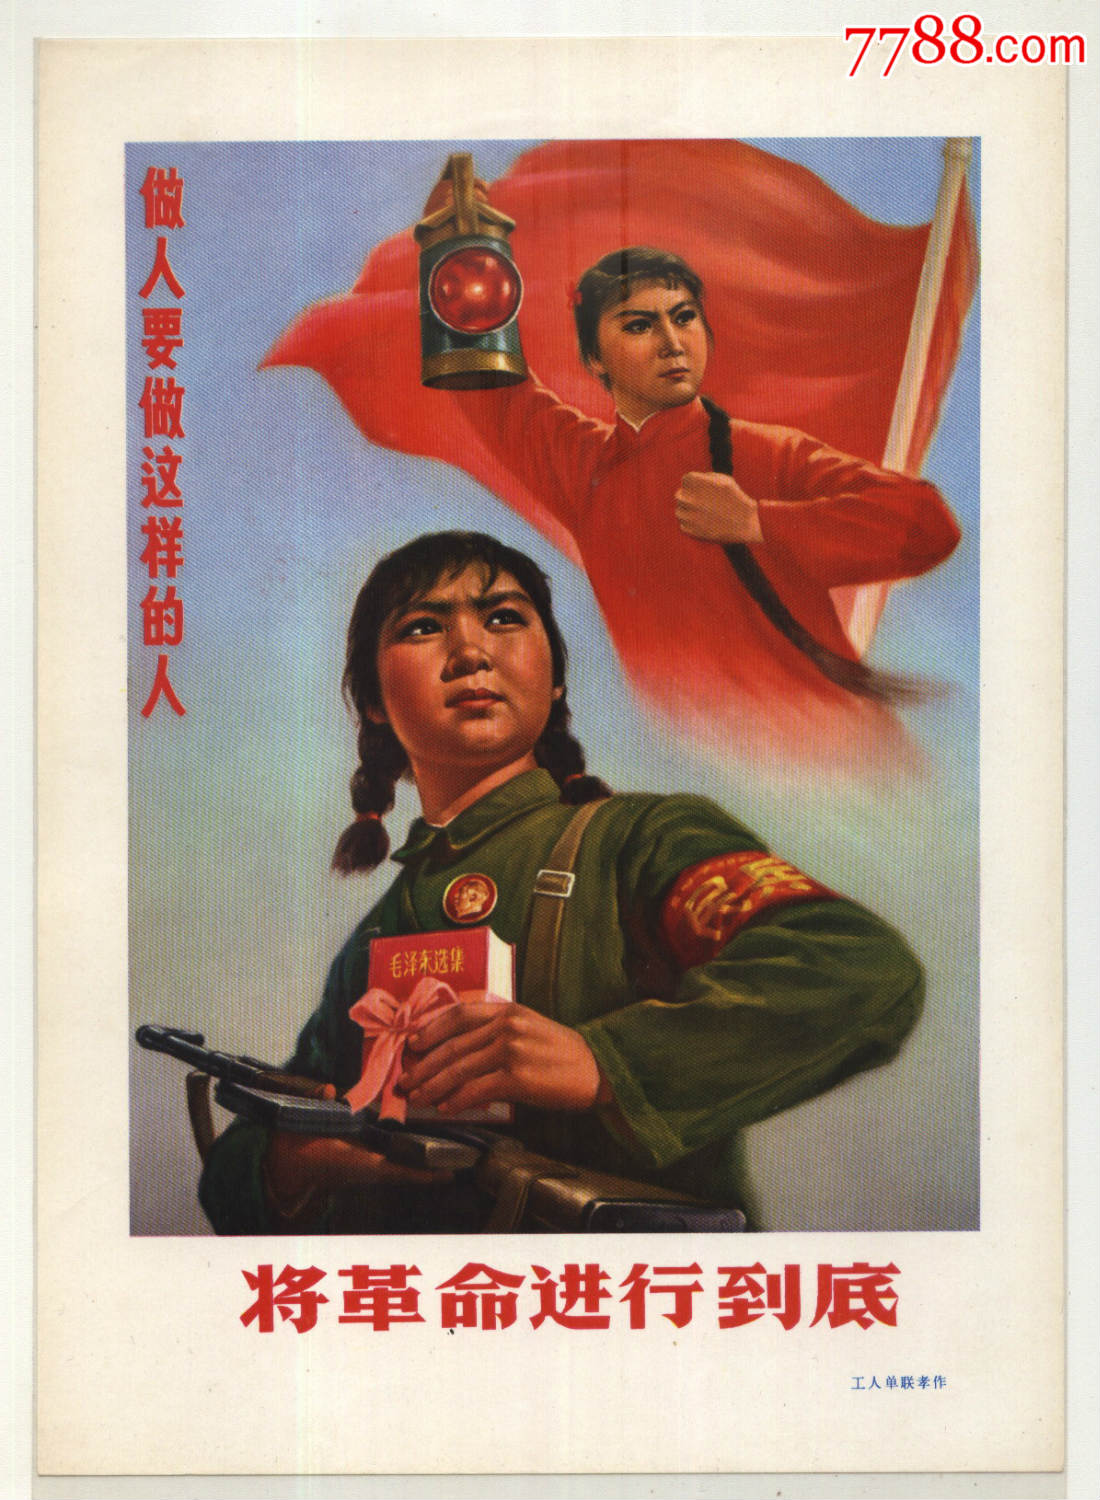 中国革命取得胜利的基本经验是什么?我知道有三点,能否就这三点详细阐述一下?不用太多,答历史题用.